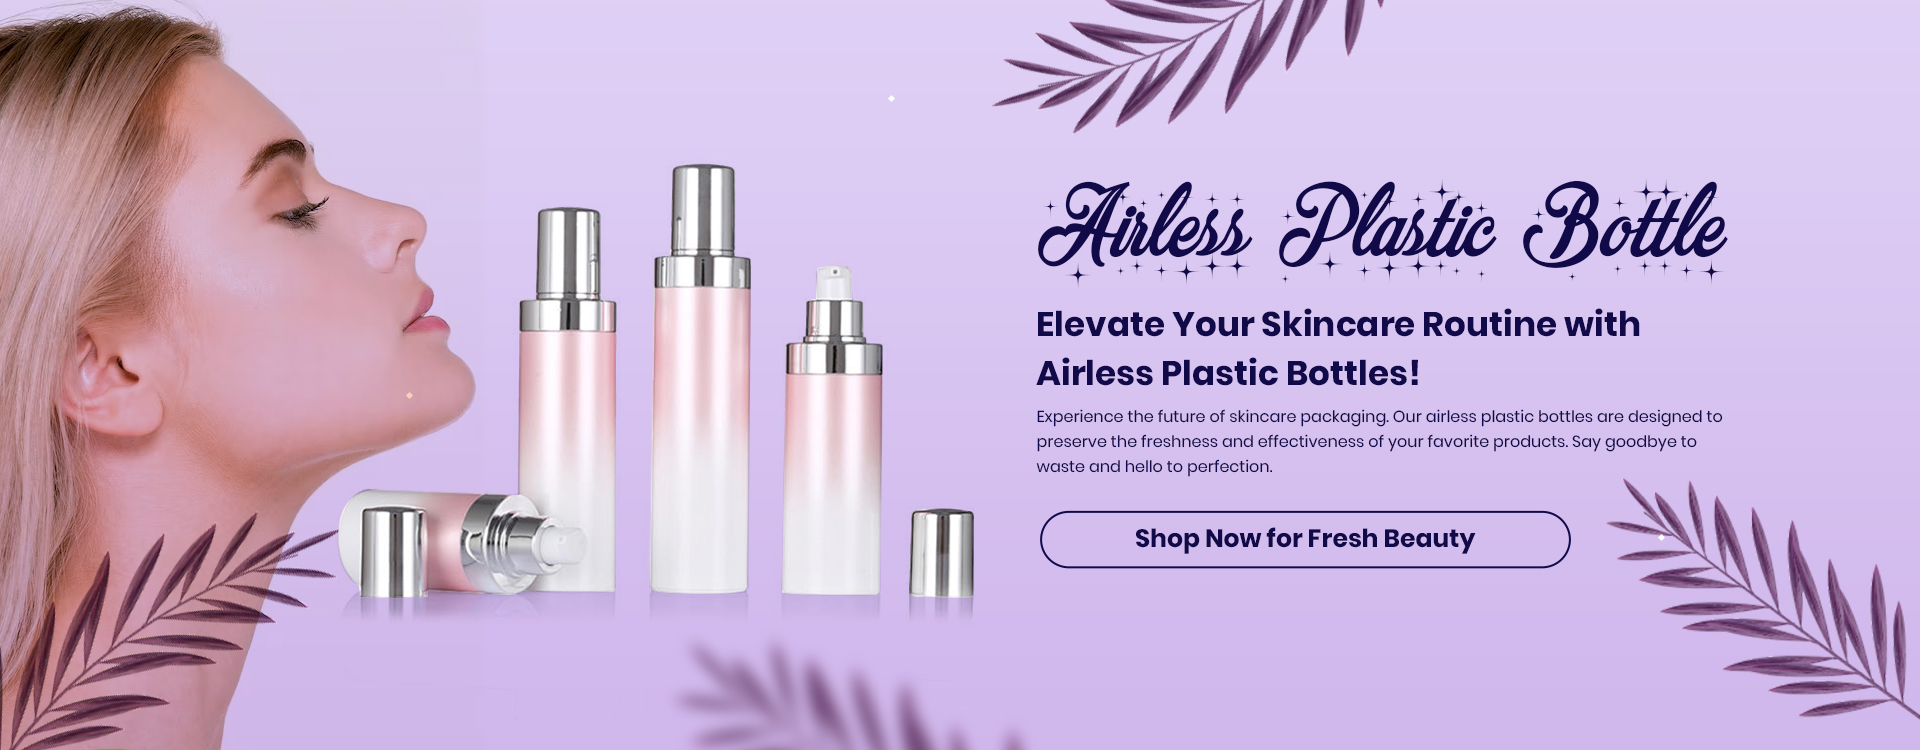 Airless-Plastic-Bottles